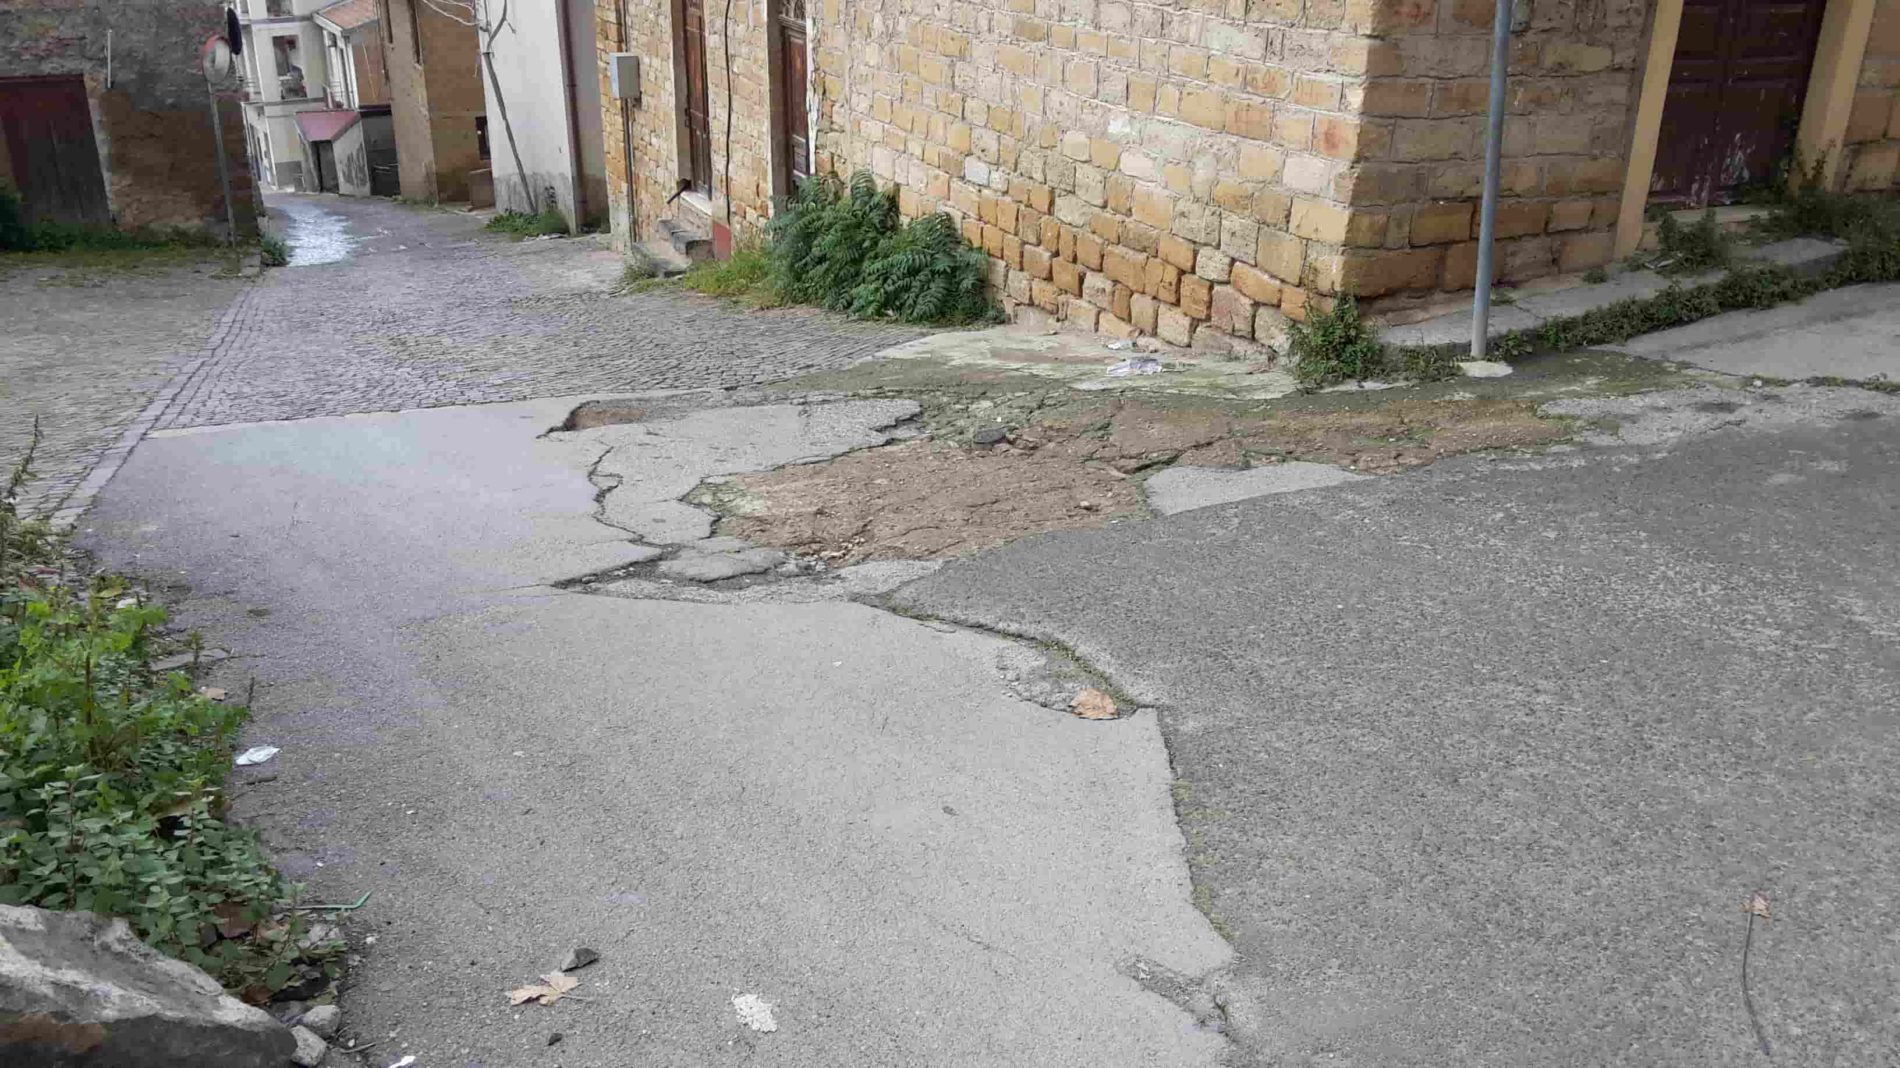 Barrafranca. Anche le strade in pericoloso dissesto, a quando la manutenzione?